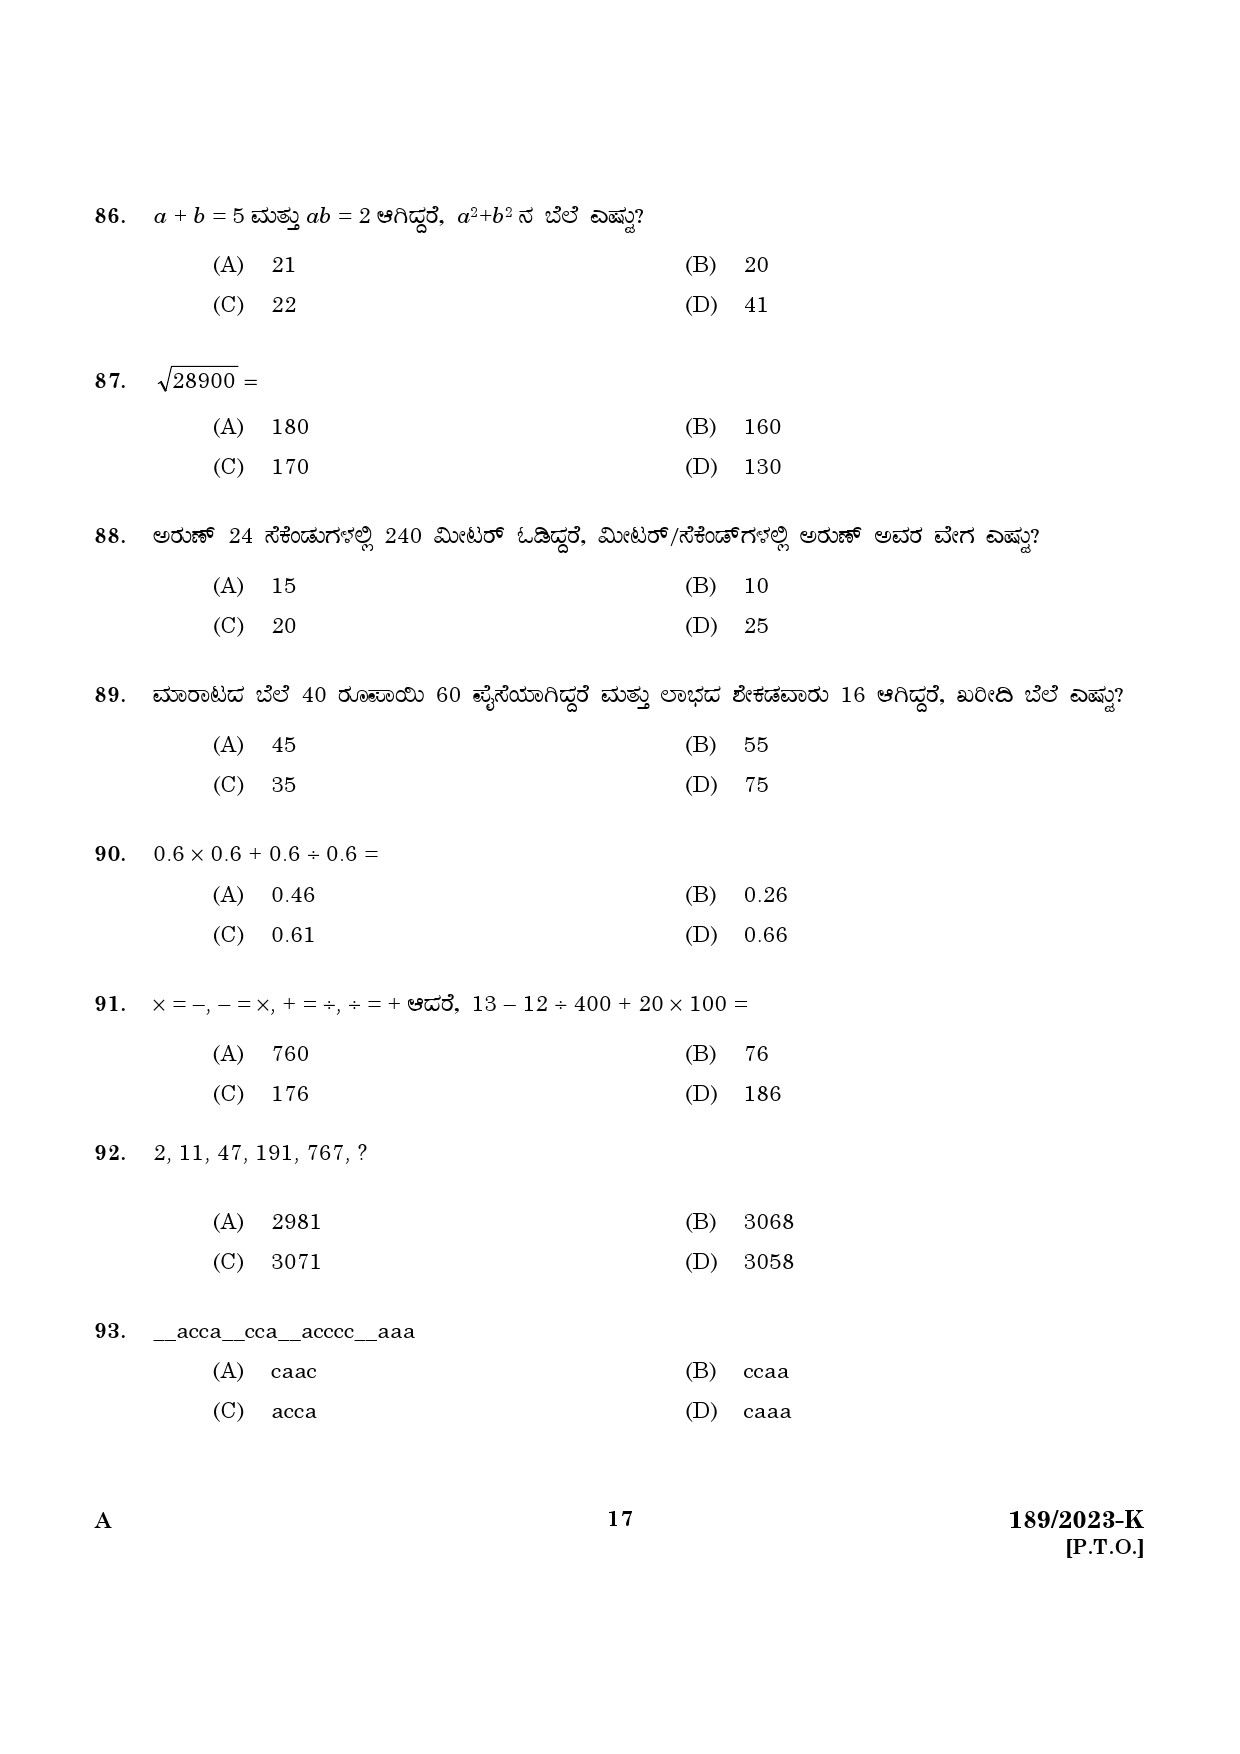 KPSC LGS Kannada Exam 2023 Code 1892023 K 15